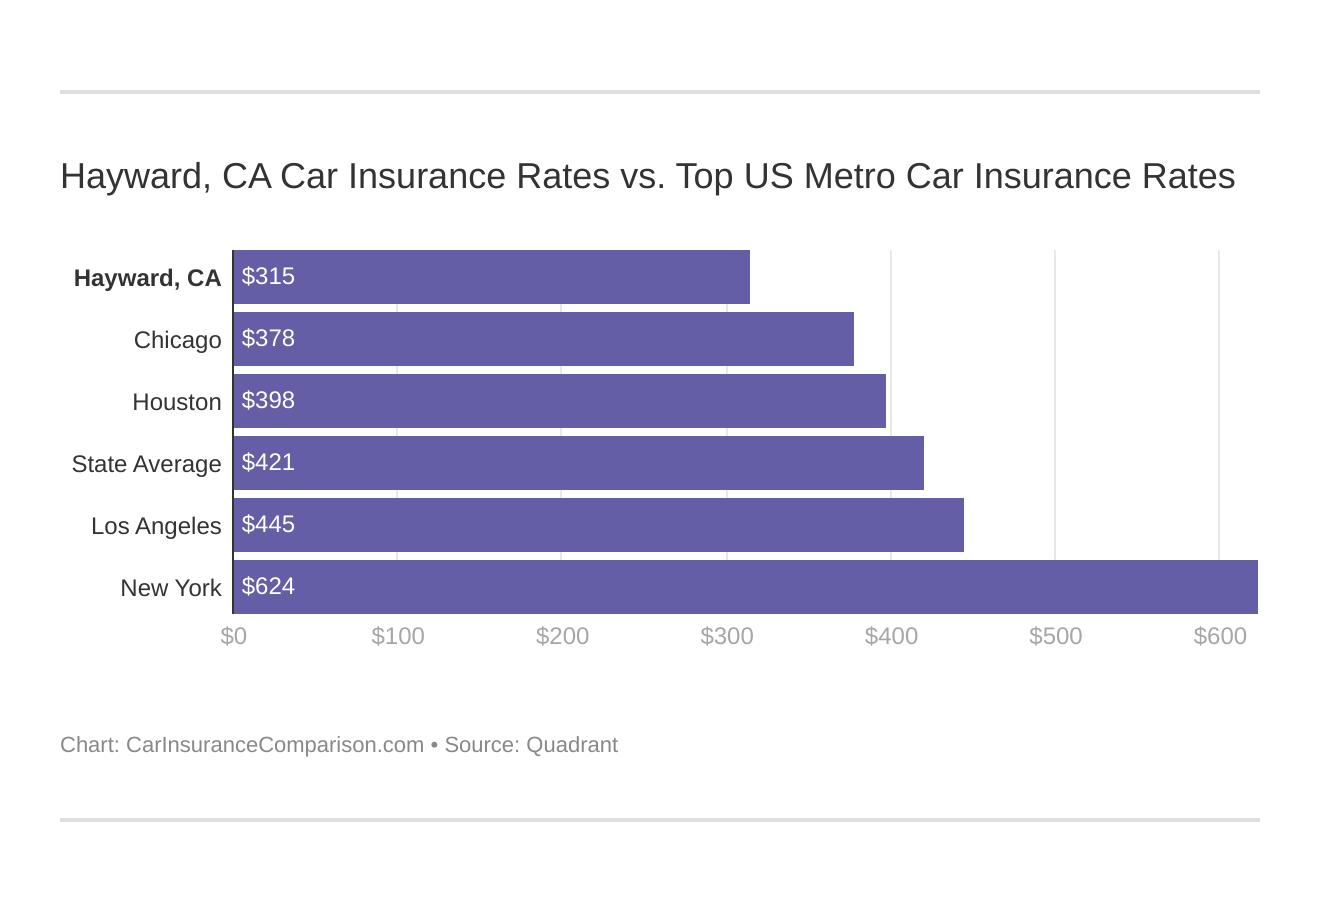 Hayward, CA Car Insurance Rates vs. Top US Metro Car Insurance Rates